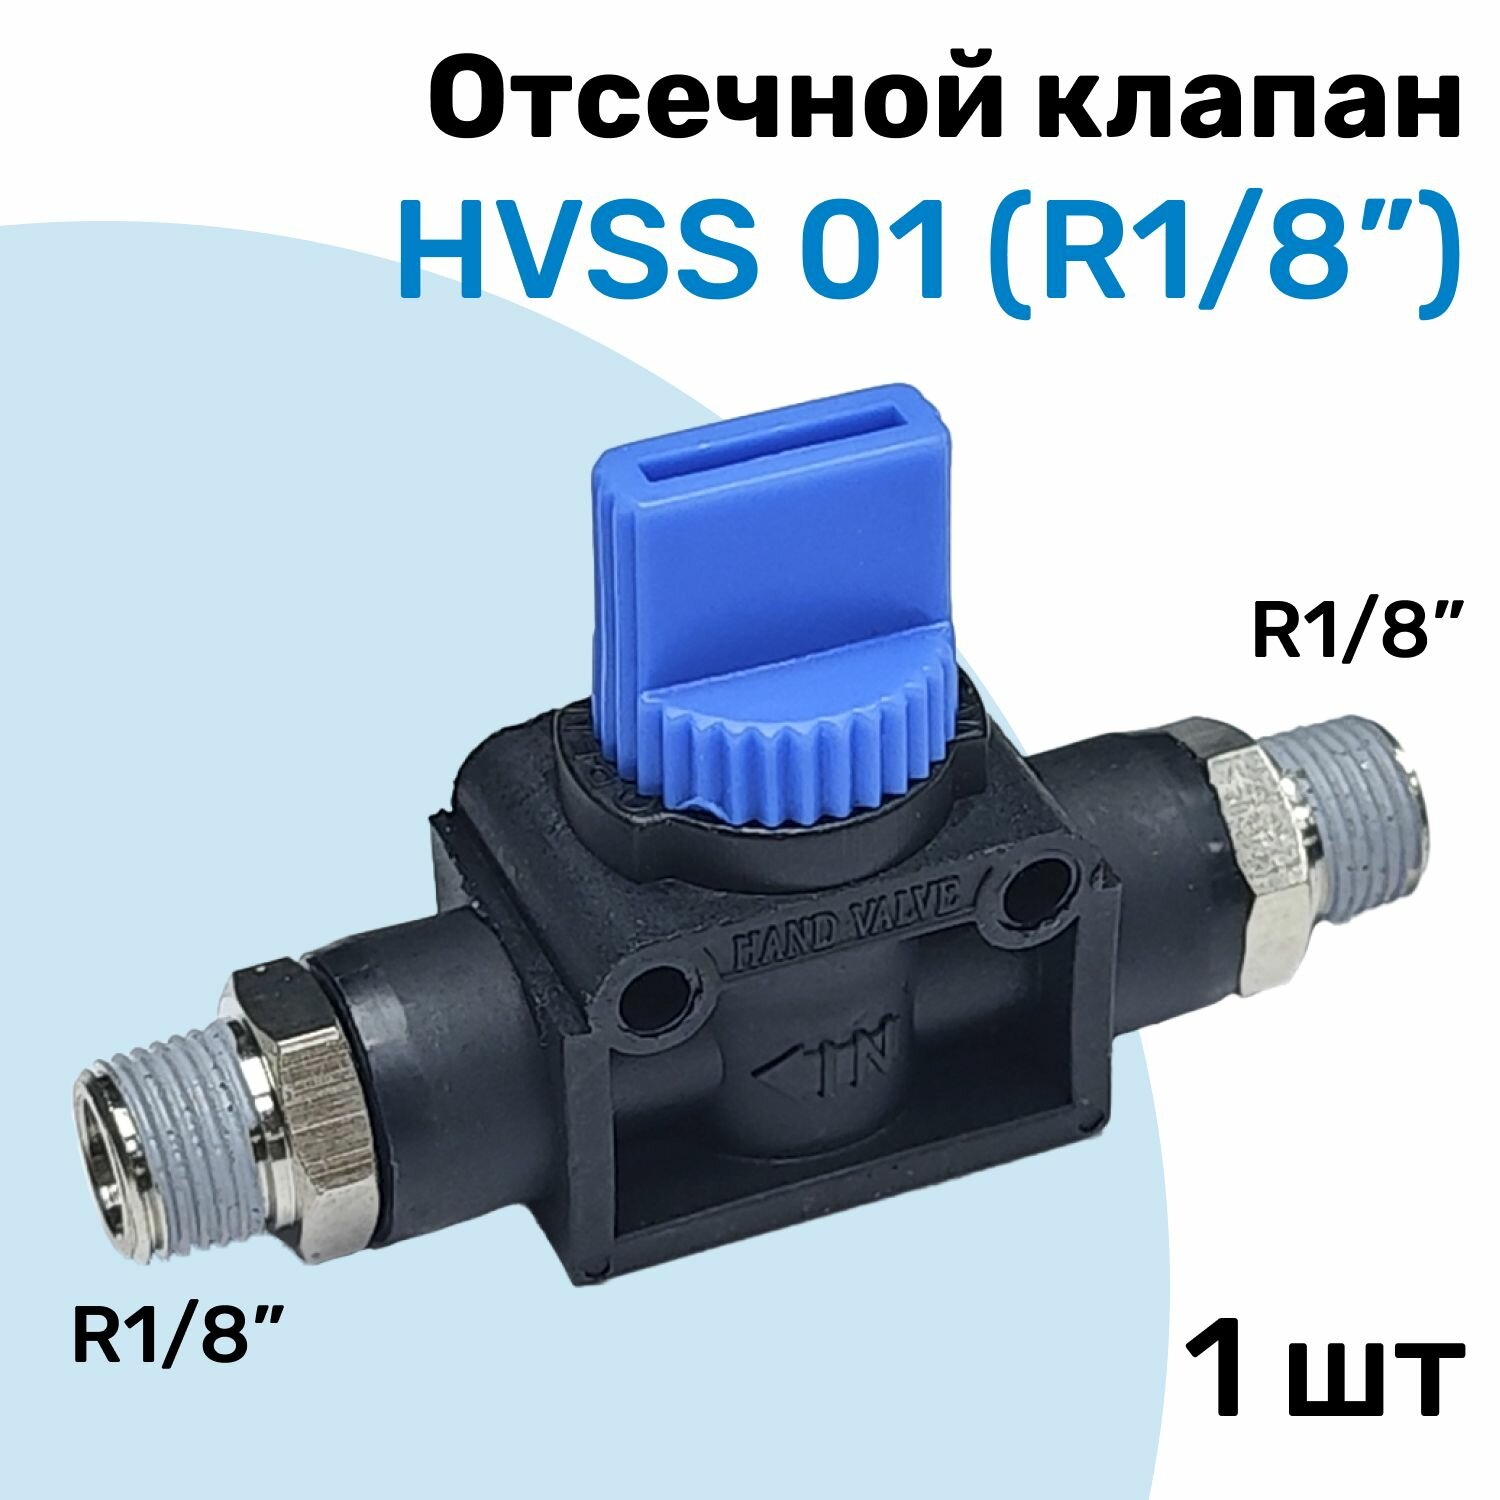 Отсечной клапан HVSS 01, R1/8", Клапан сброса давления, Пневмофитинг NBPT